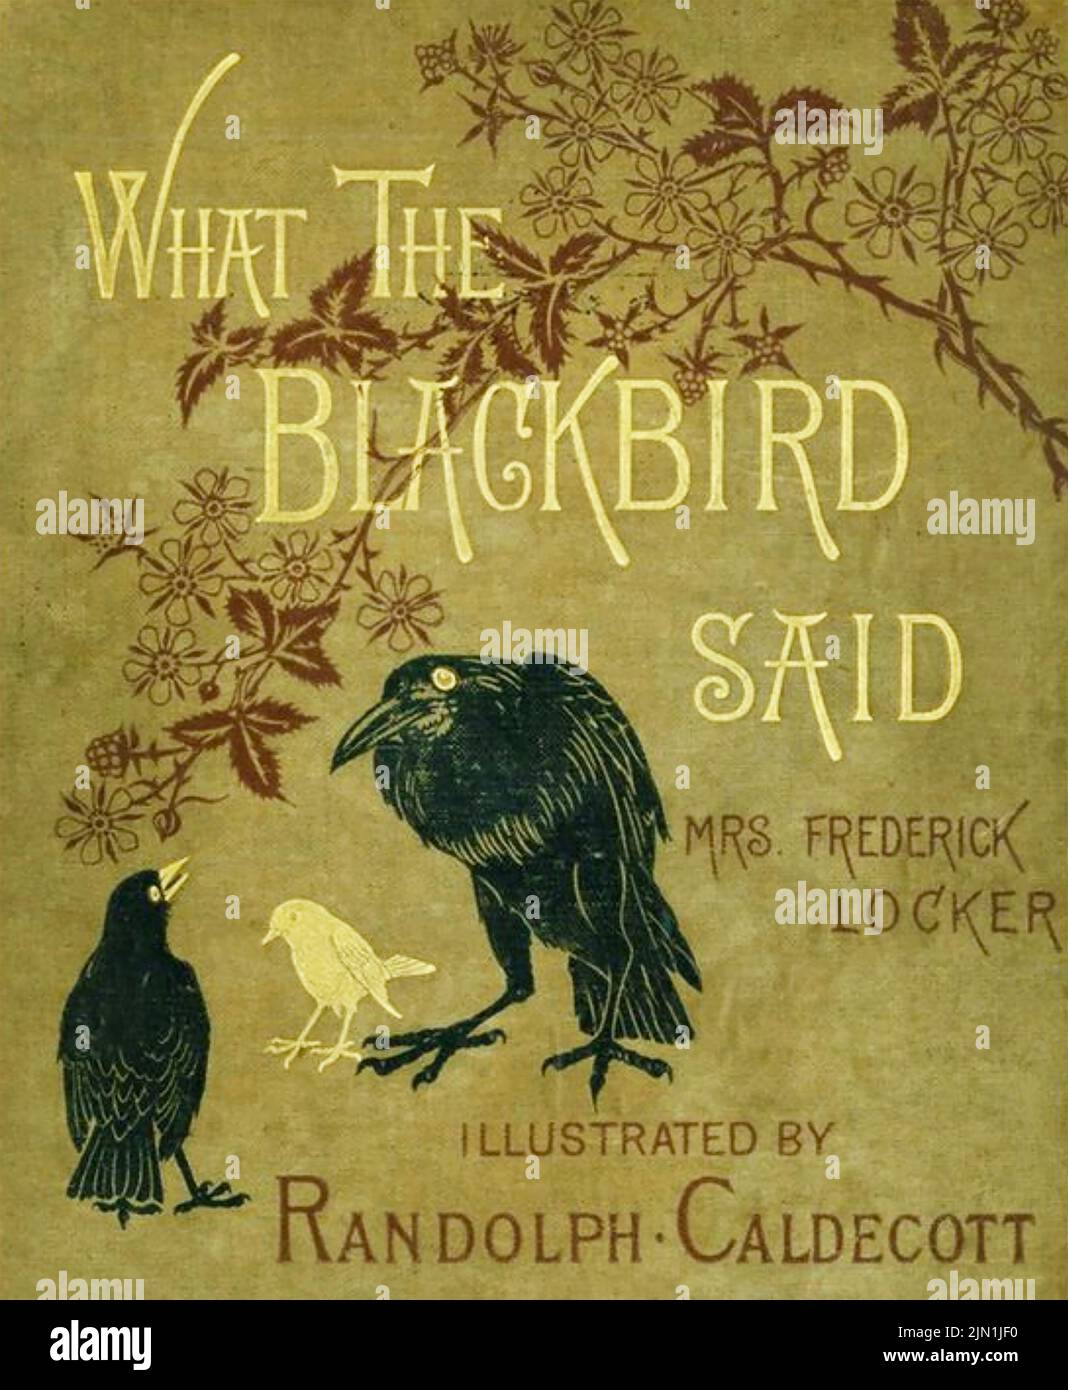 LO QUE EL BLACKBIRD DIJO 1881 novela de la señora Frederick Locker Foto de stock